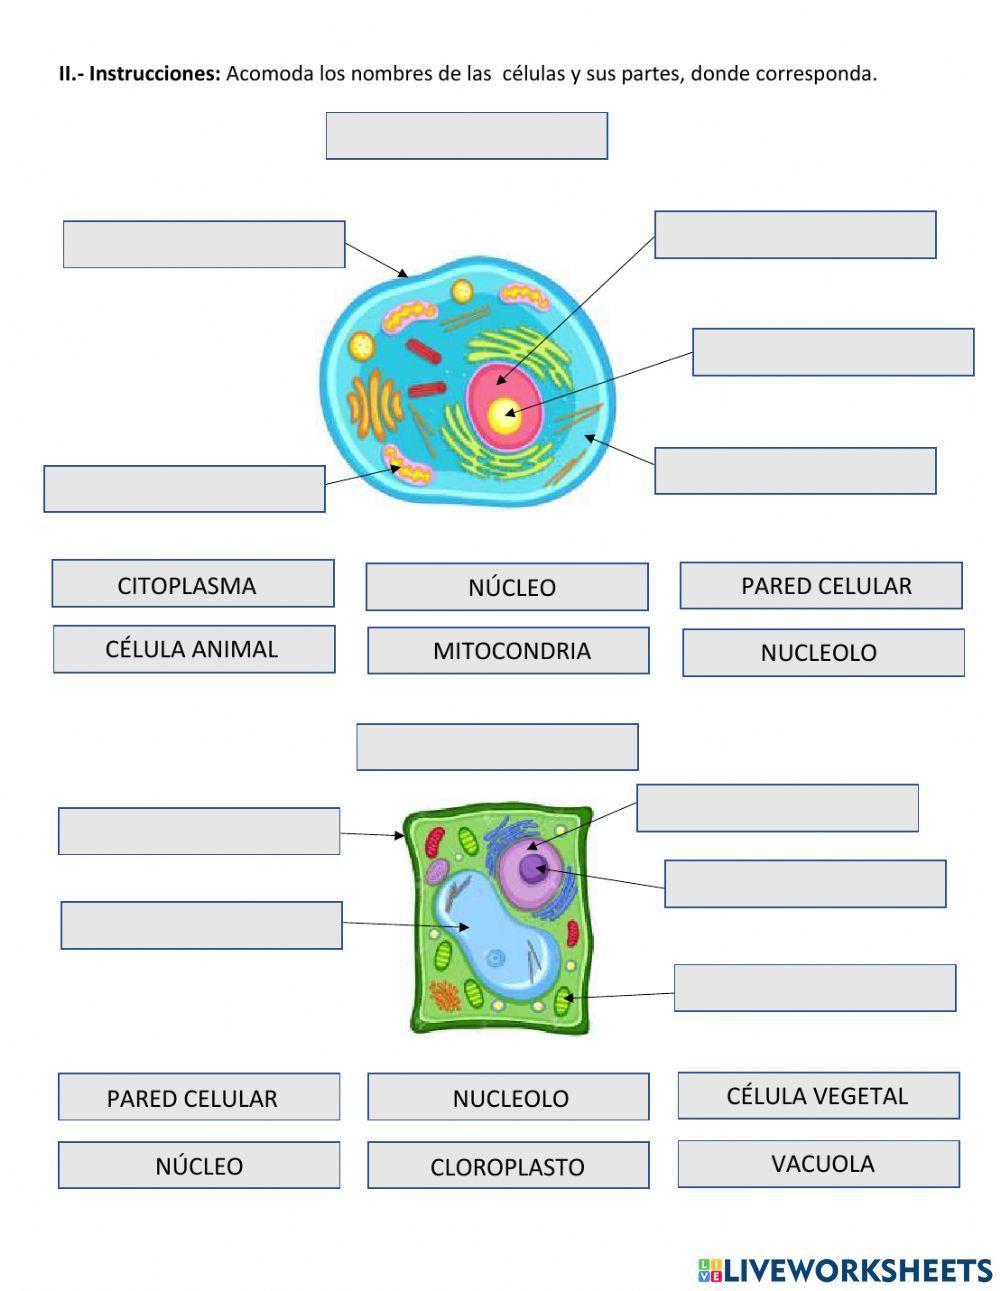 La célula y sus partes